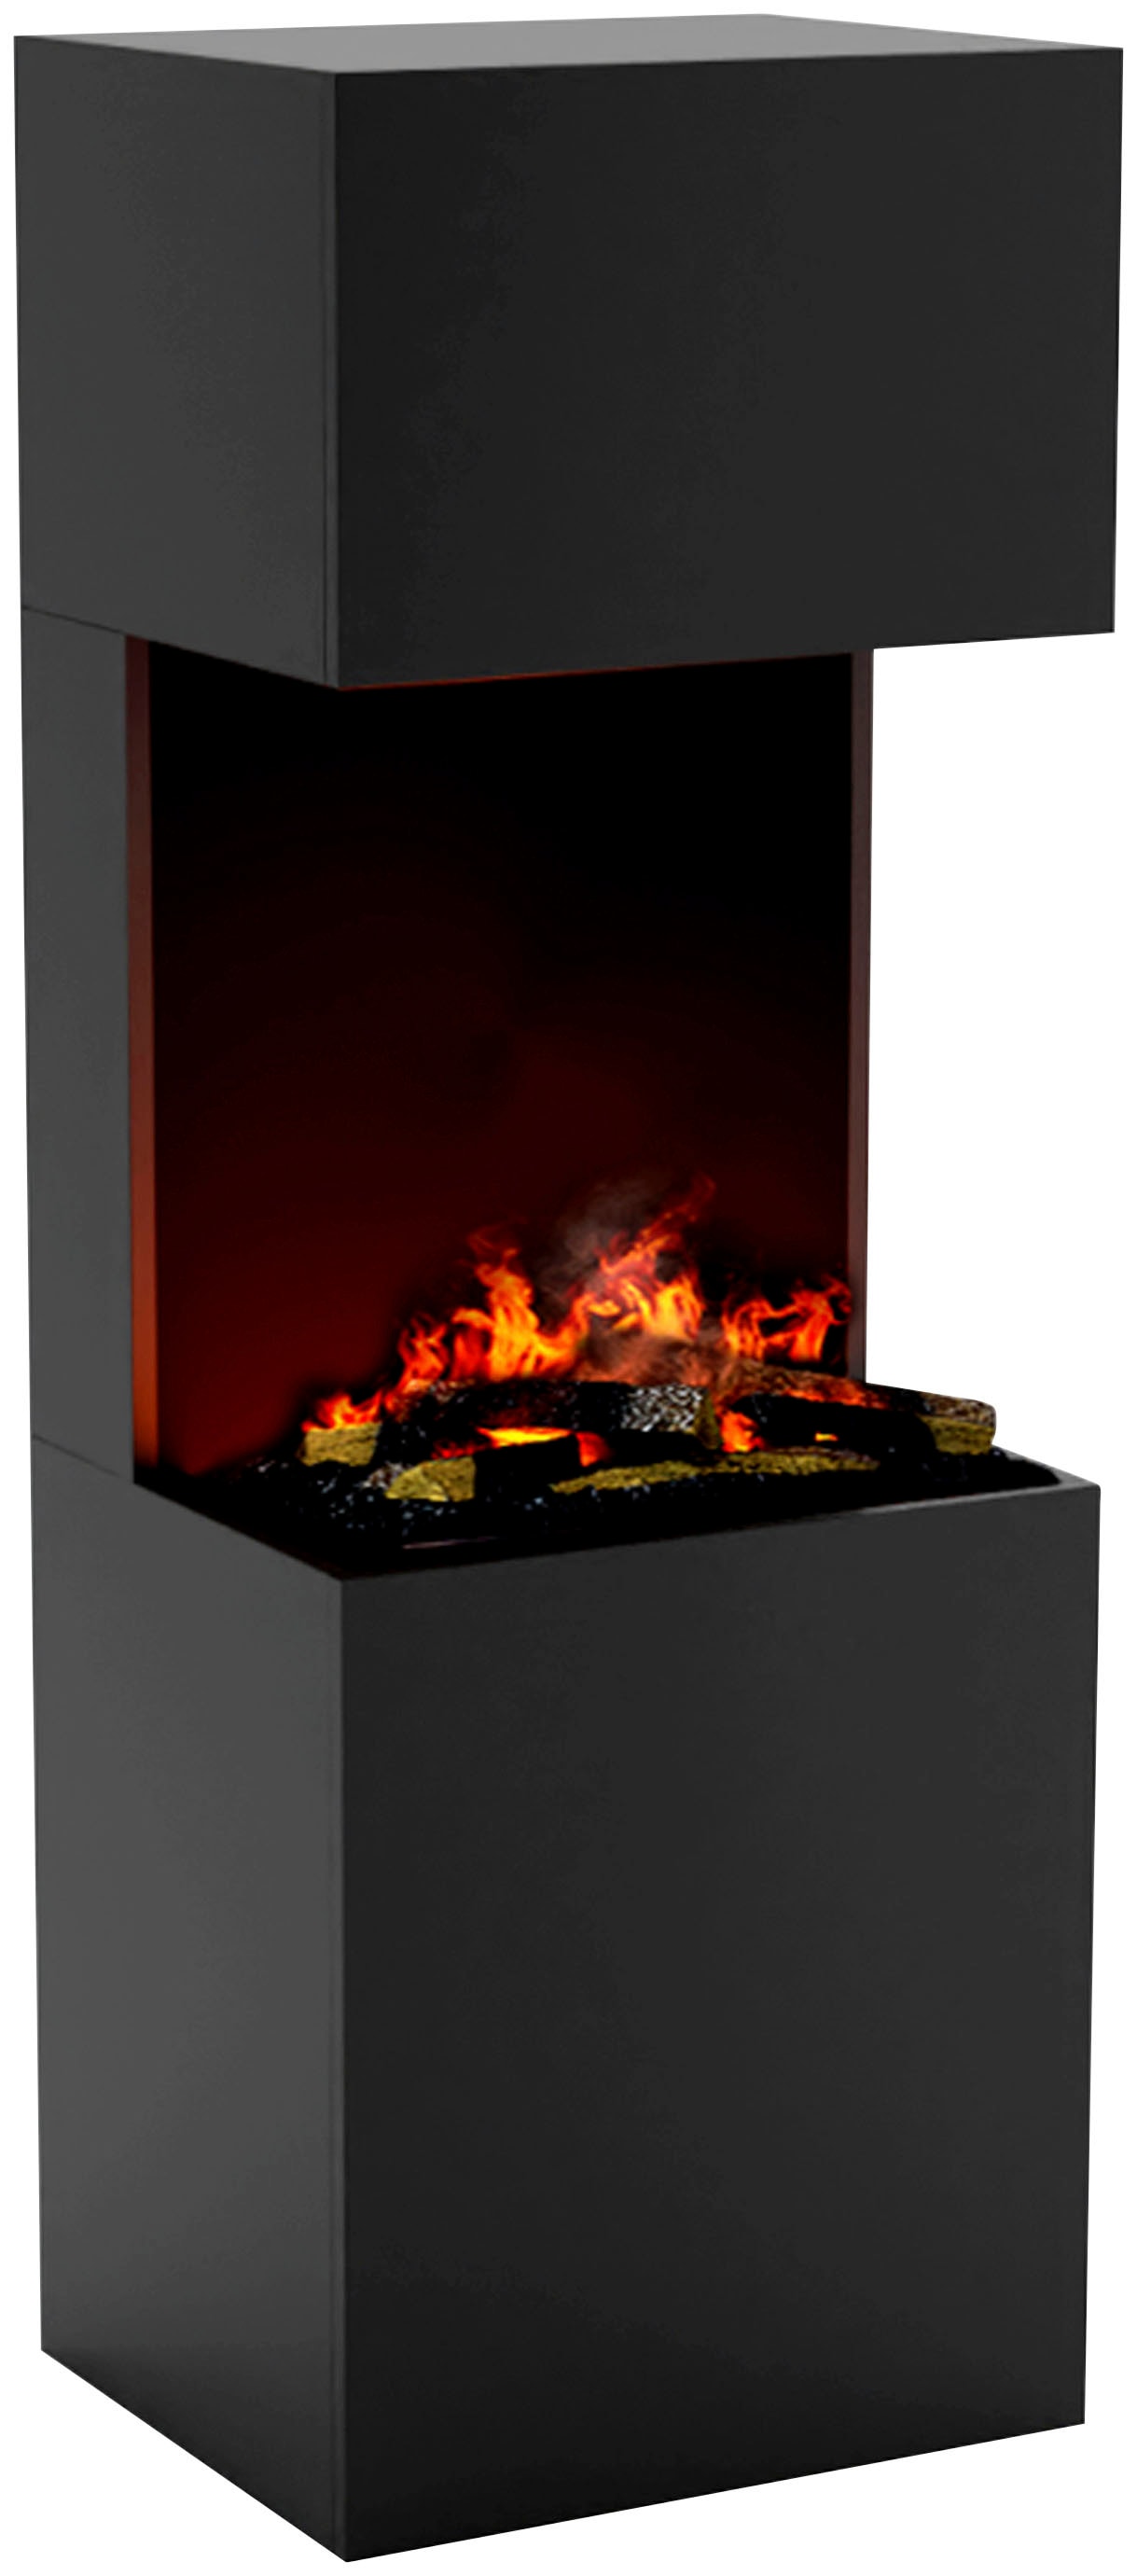 GLOW FIRE Beethoven Elektrokamin mit Knistereffekt|Opti Myst Cassette 600 mit Holzdeck | 3D Wasserdampf Kamin, Elektrischer Kamin mit Fernbedienung, Regelbarer Flammeneffekt, 90 cm, Schwarz